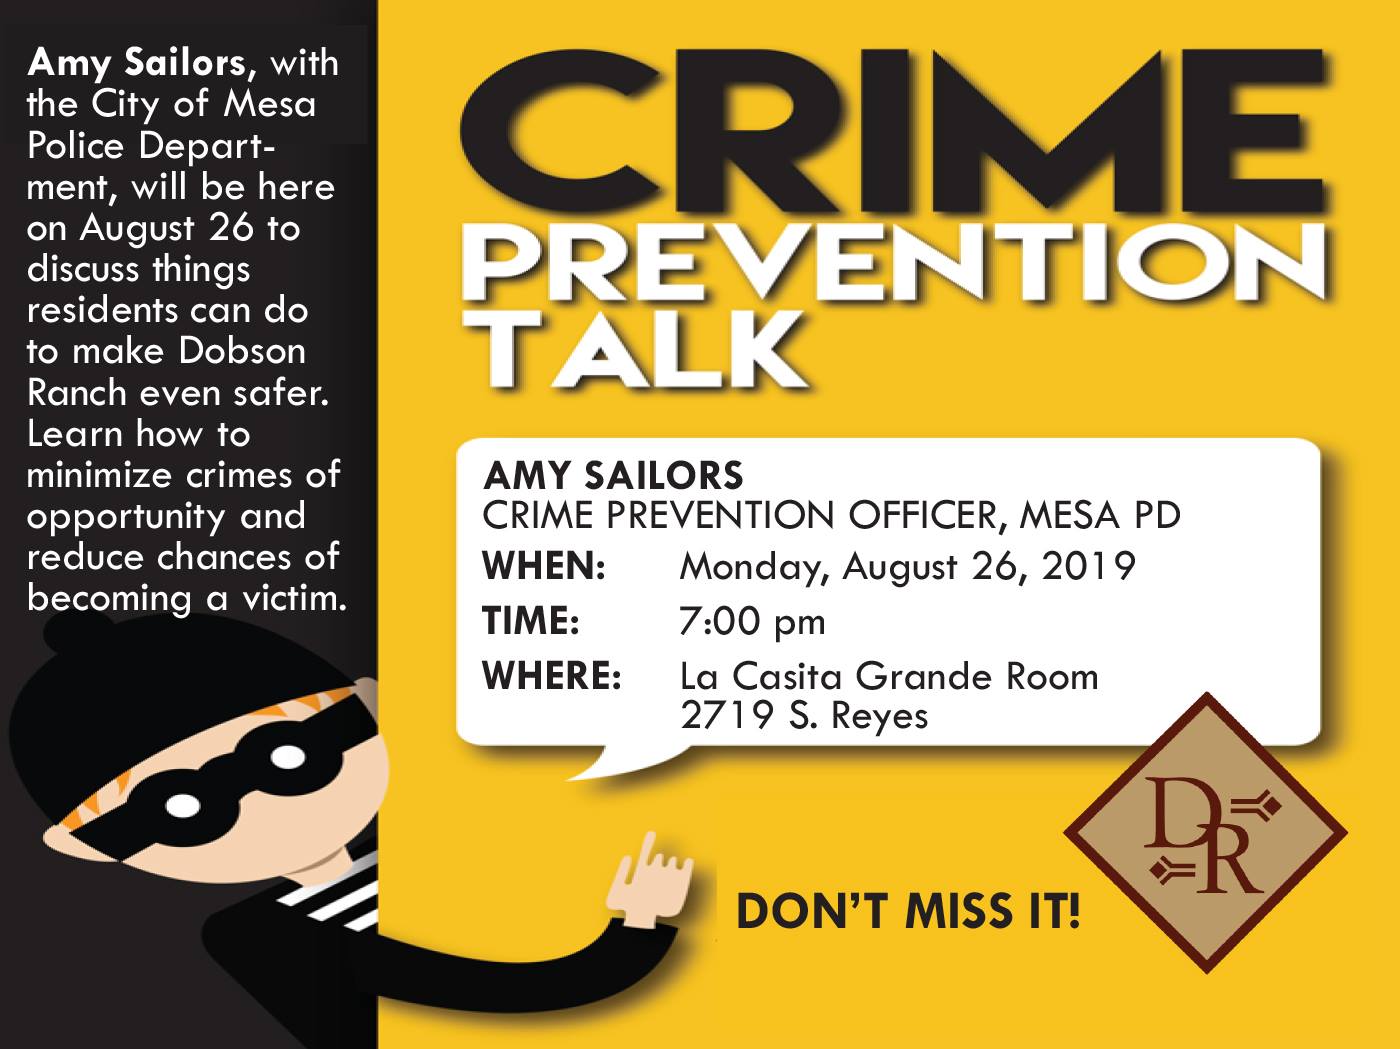 CRIME PREVENTION TALK @ La Casita Grande Room